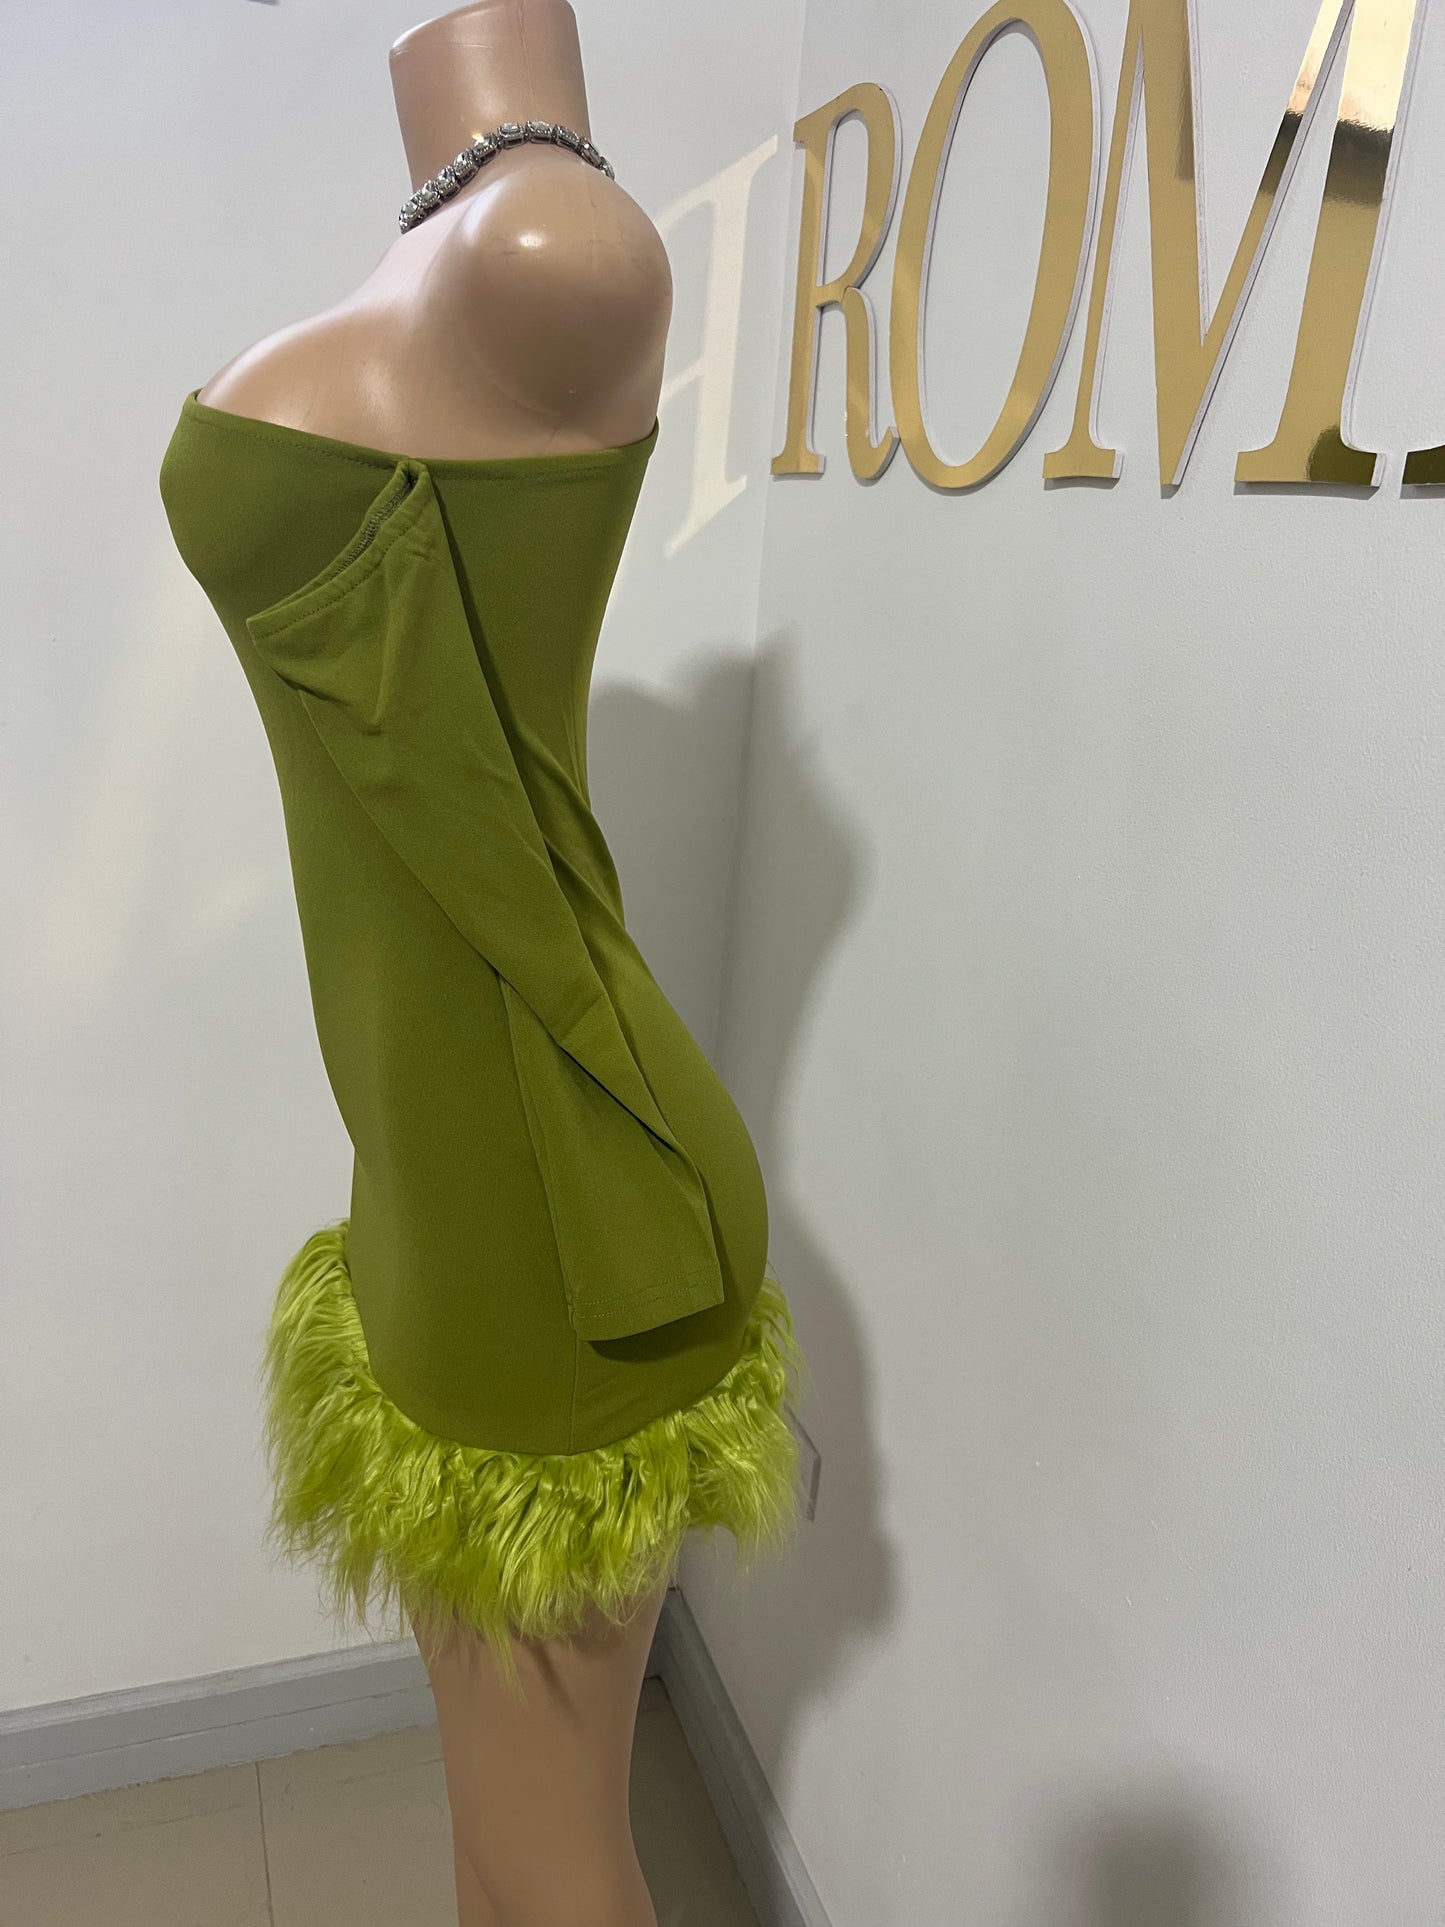 Moira Long Sleeve Dress (Green)